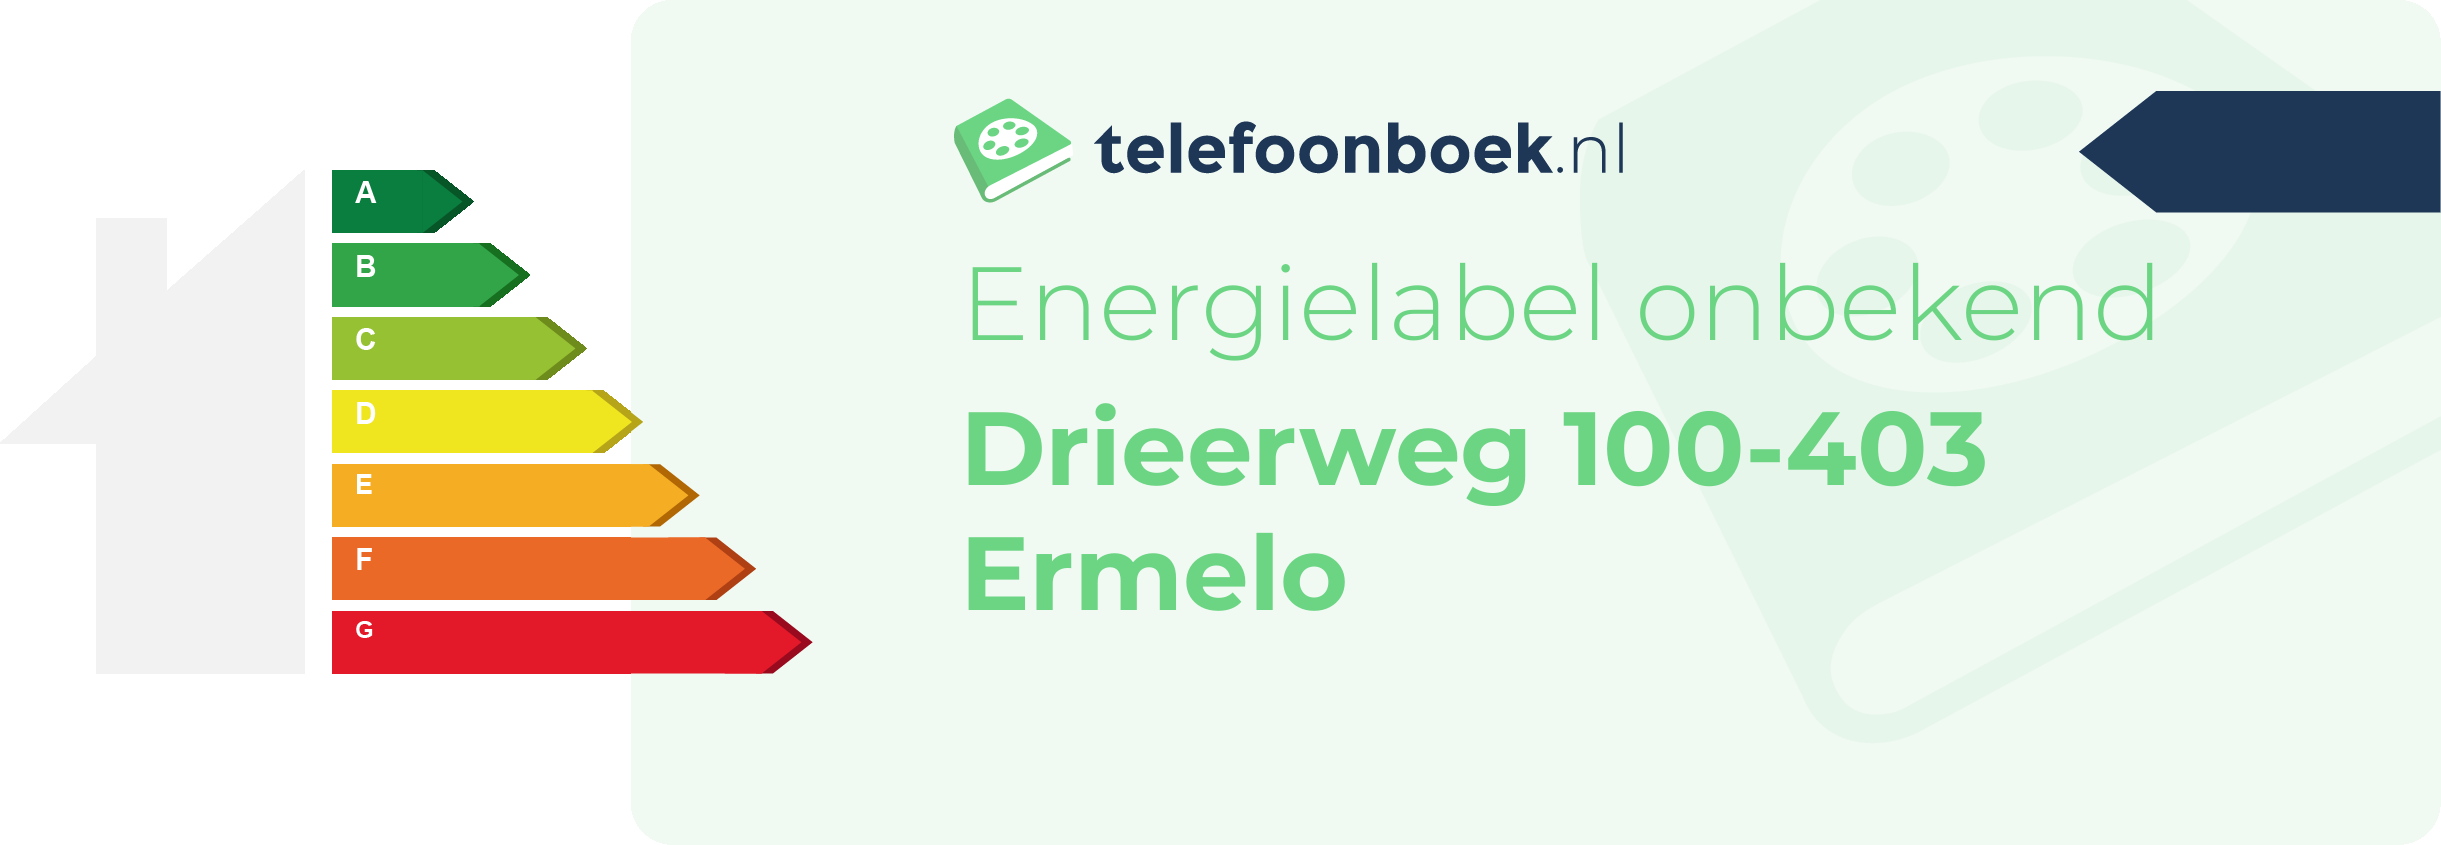 Energielabel Drieerweg 100-403 Ermelo